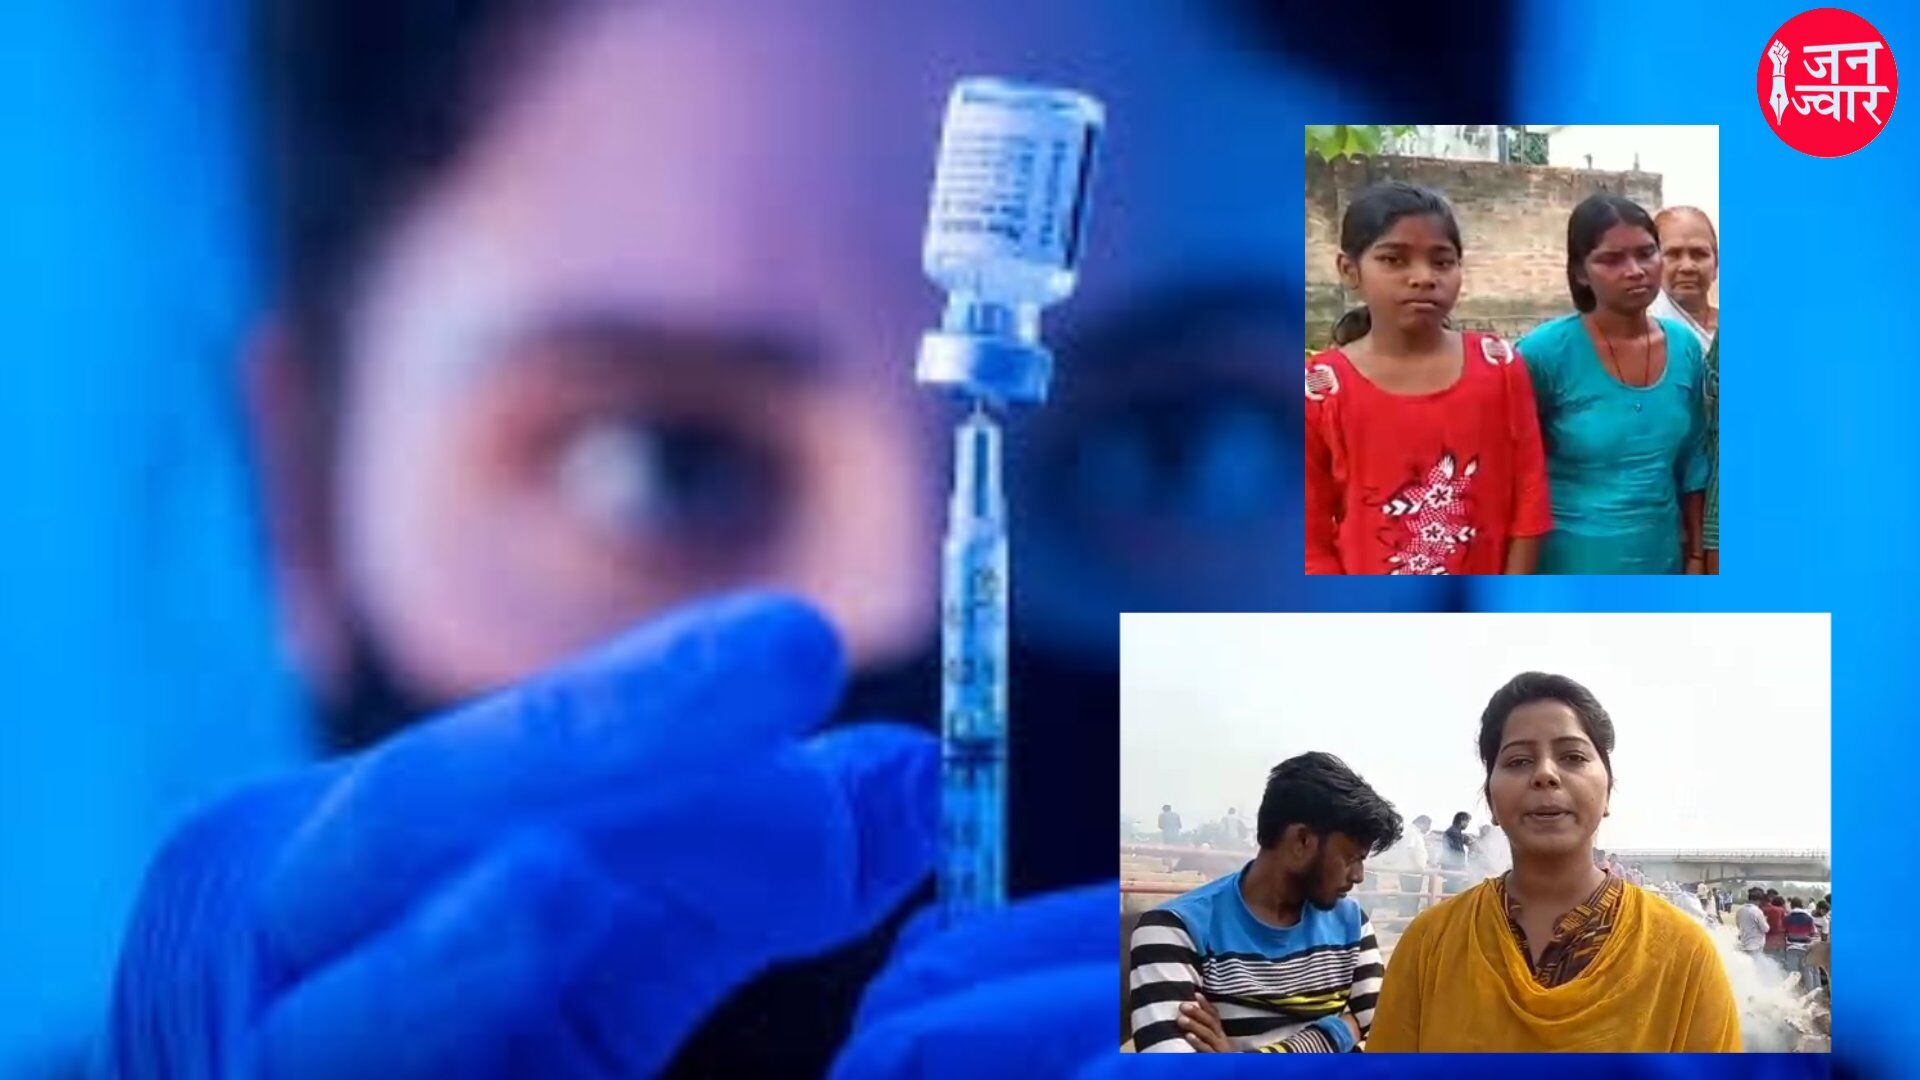 Gorakhpur News: दलित महिला की कोरोना वैक्सीन लेने के बाद मौत, परिवार ने लगाये गंभीर आरोप